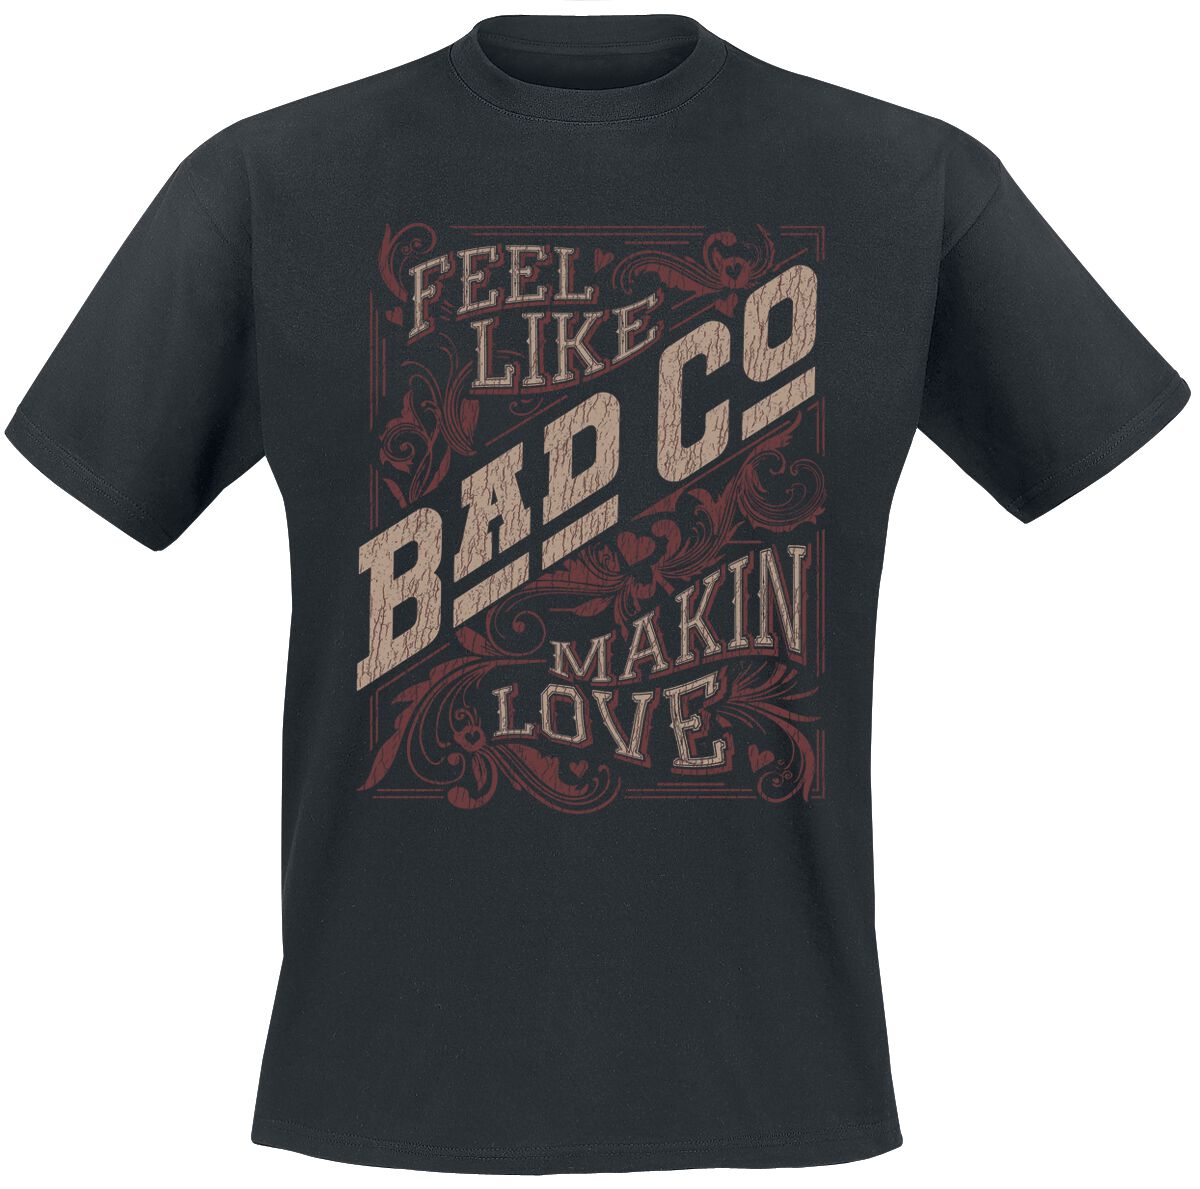 Bad Company Makin Love T-Shirt schwarz in S